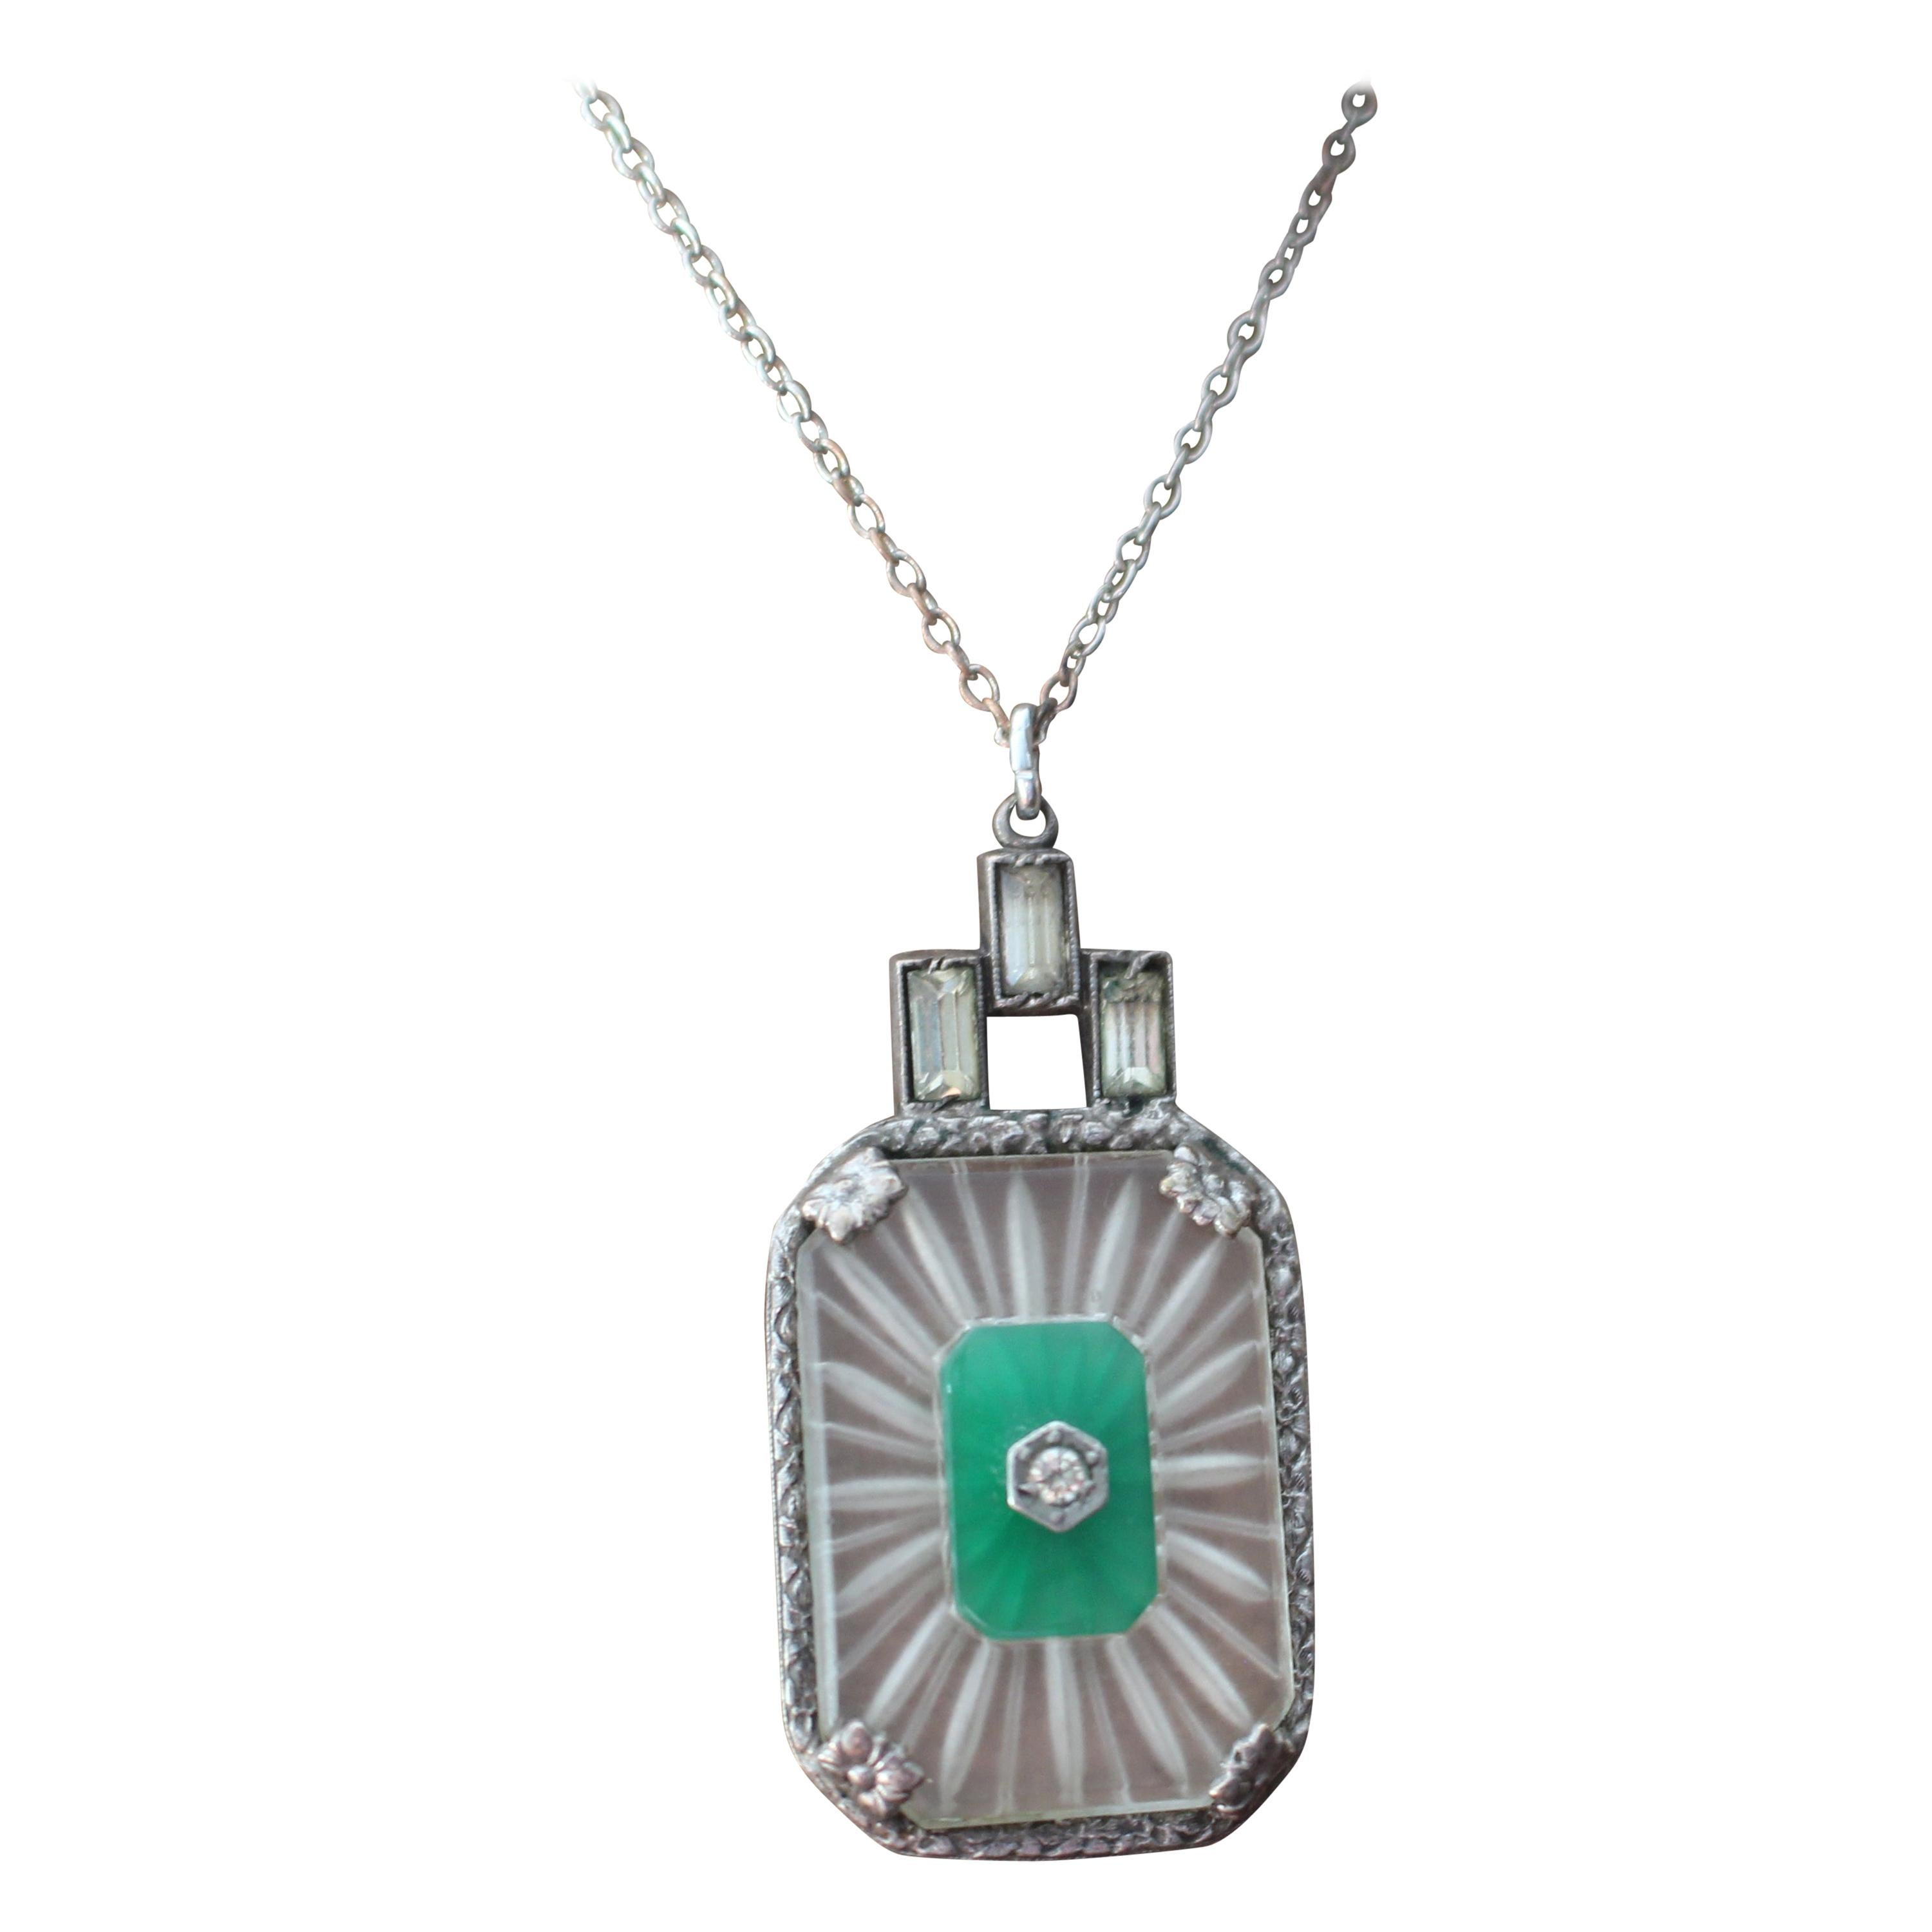 1930 Art Deco Paste Jade Glass Drop Pendant Necklace Sautoir Silver Chain For Sale